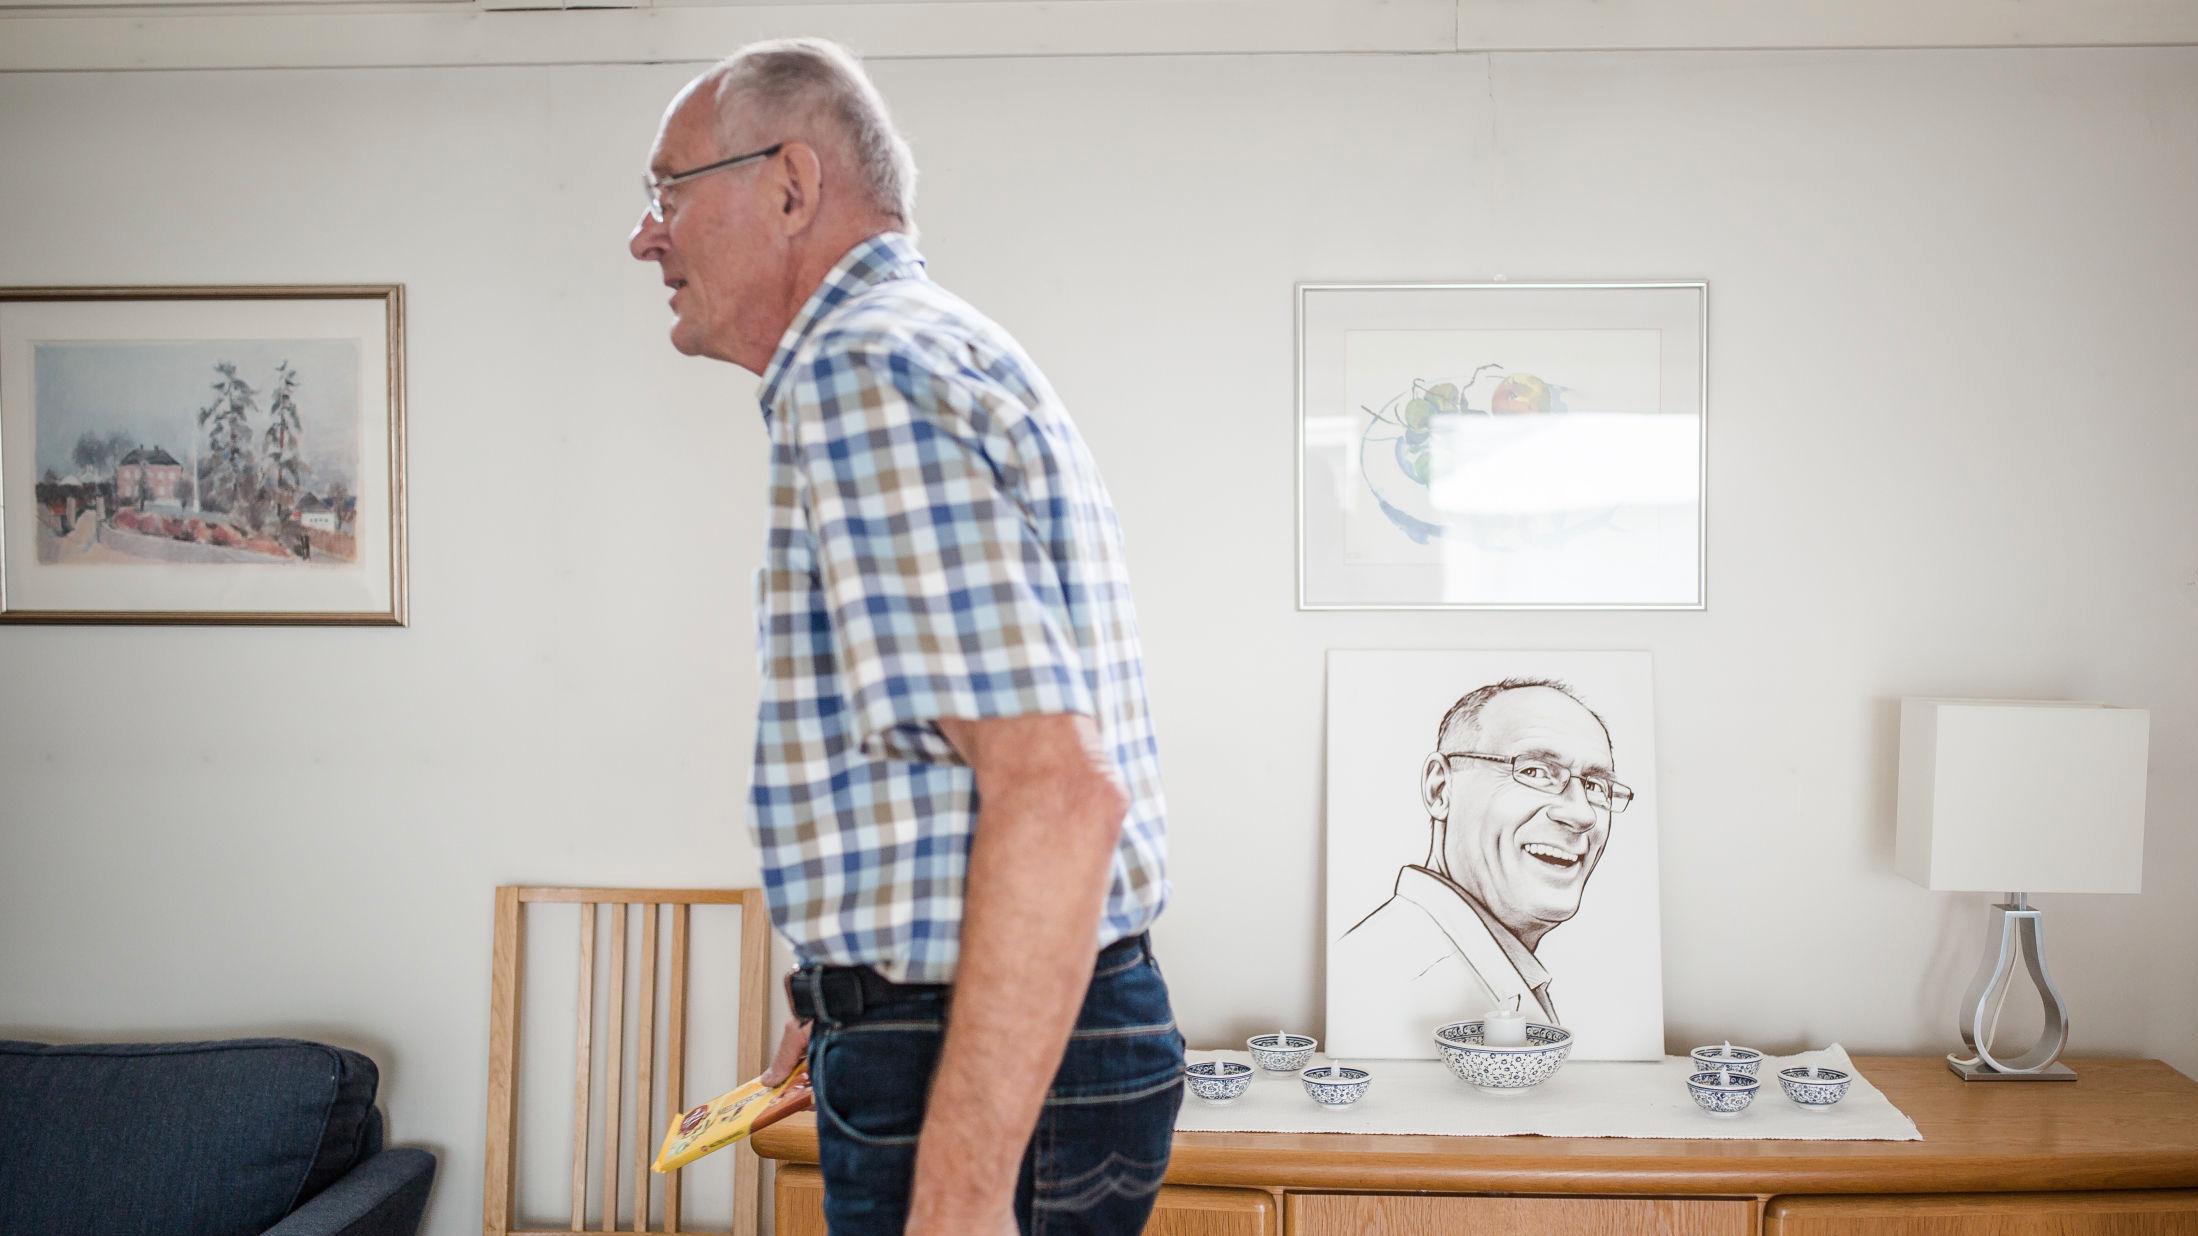 SMILET: På hyllen i stuen står et bilde av Walter Huber (74) mange nok kjenner igjen fra handleturen. Foto: Odin Jæger/VG